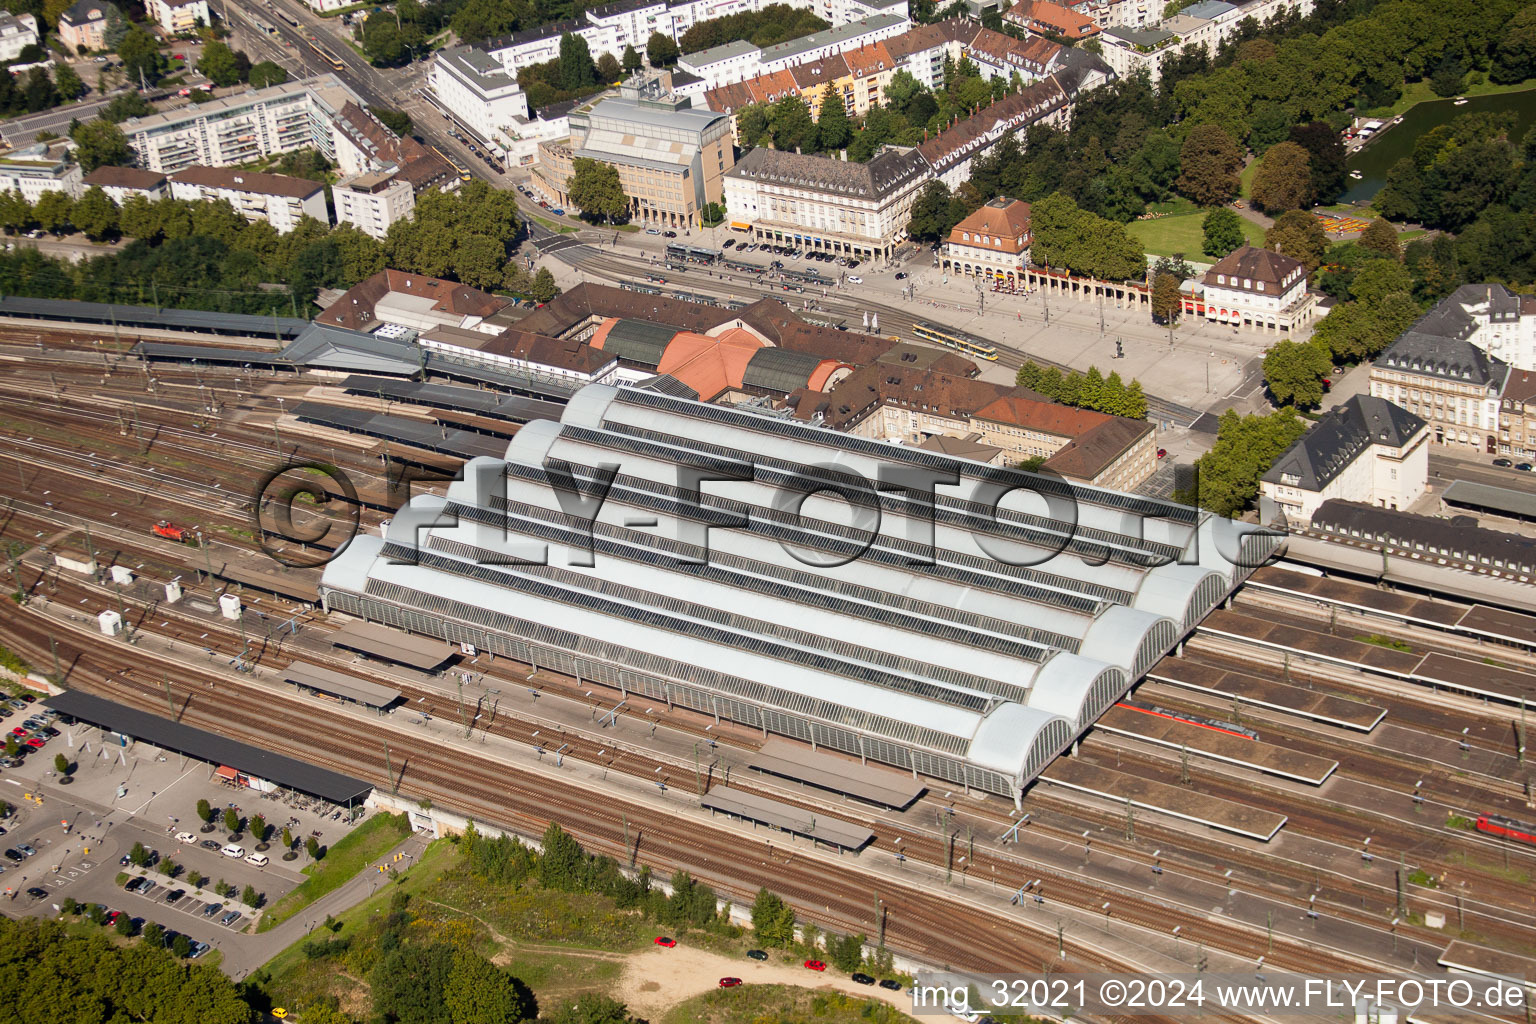 Luftbild von Gleisverlauf und Gebäude des Hauptbahnhofes der Deutschen Bahn in Karlsruhe im Ortsteil Südweststadt im Bundesland Baden-Württemberg, Deutschland